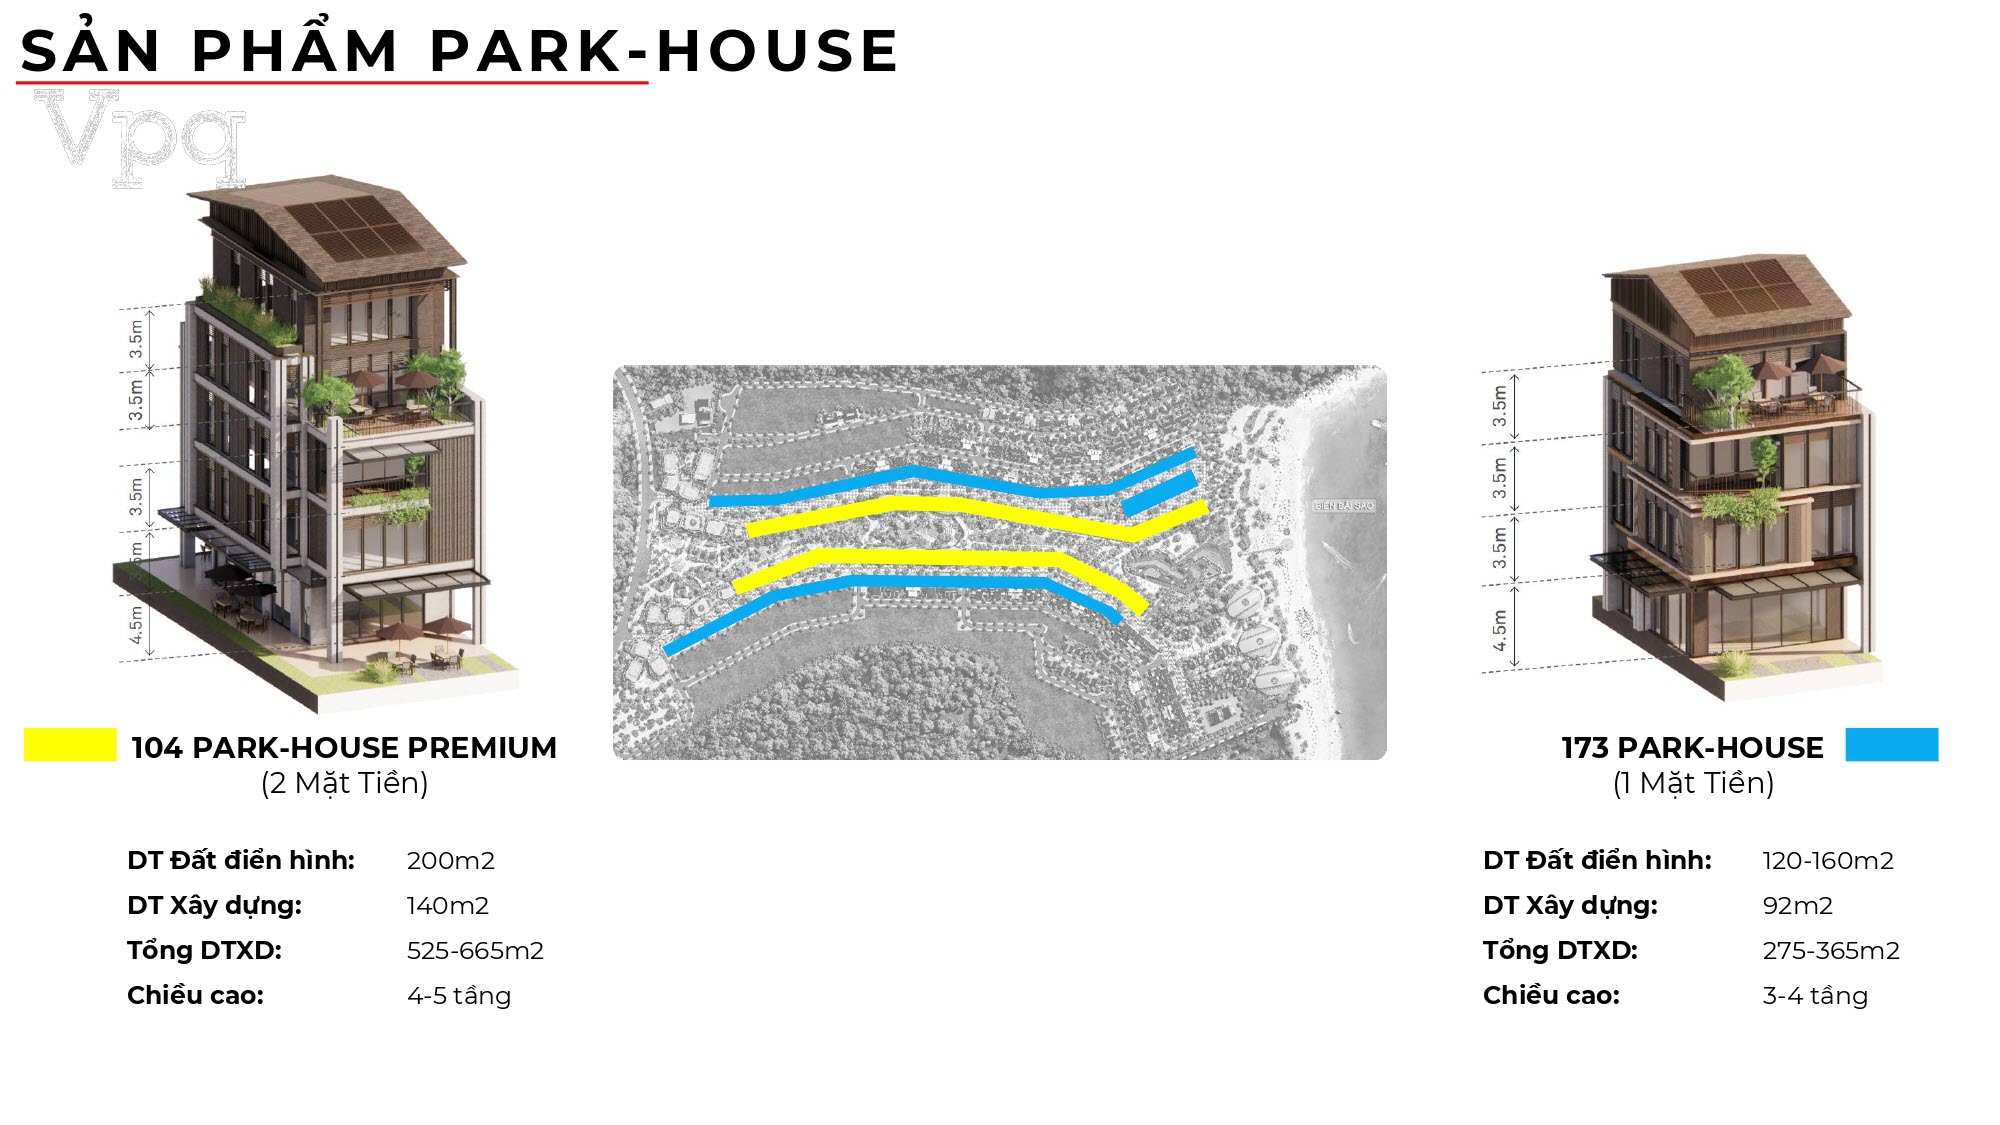 Thiết kế Park House và Park House Premium